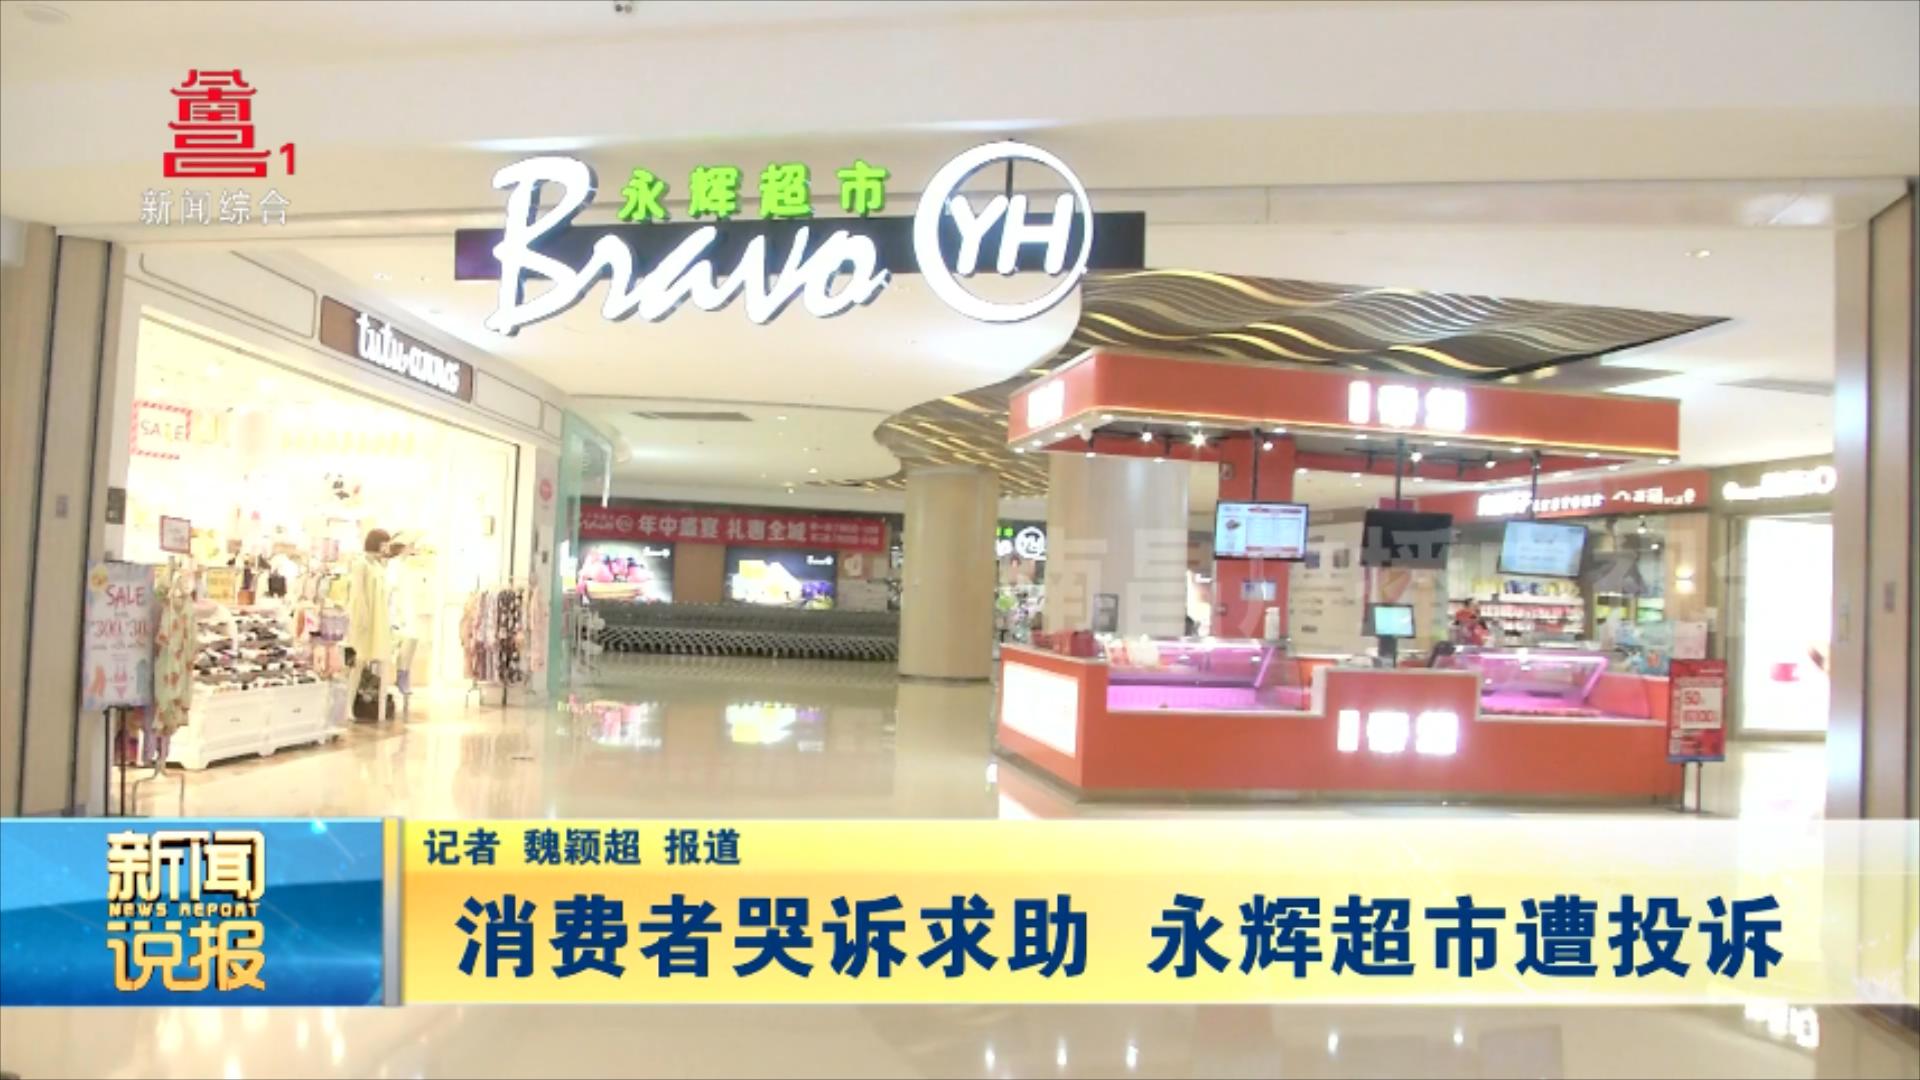 消费者哭诉求助 永辉超市遭投诉